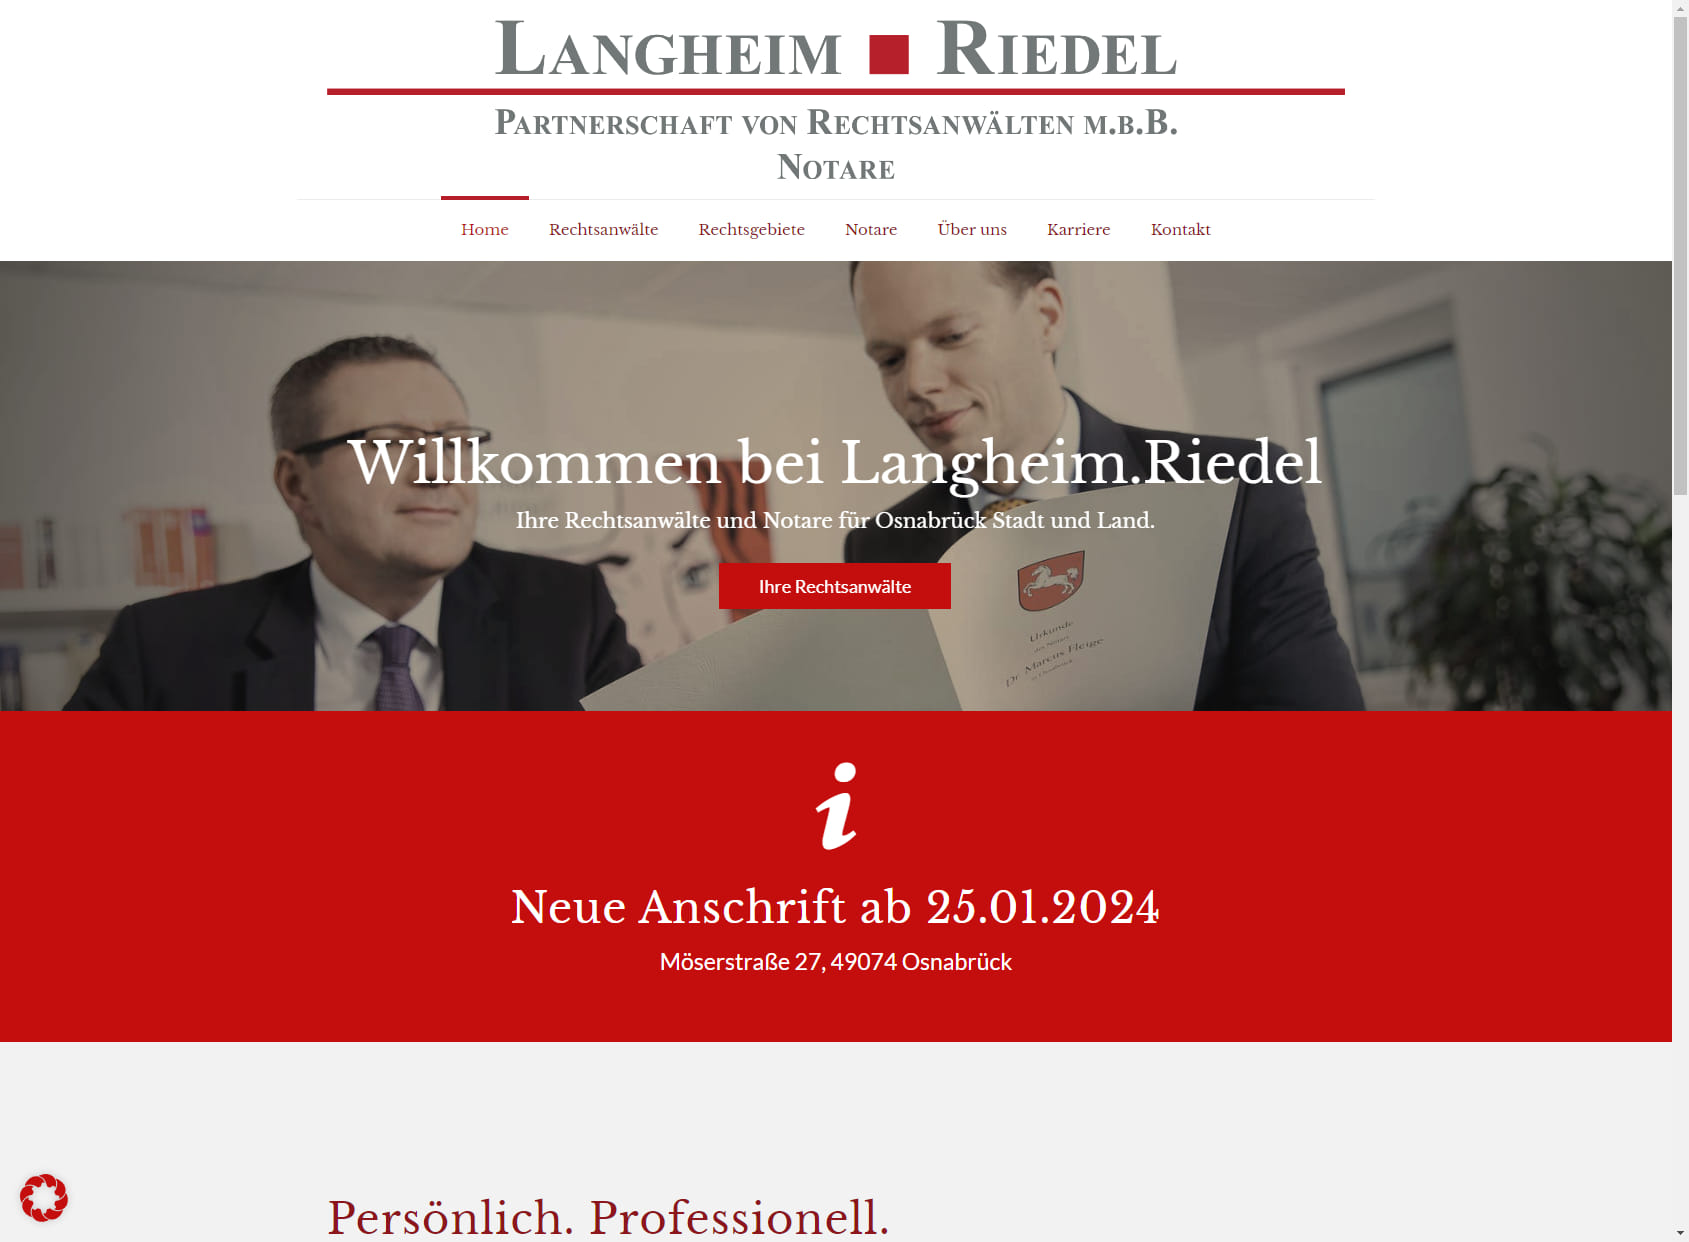 Langheim.Riedel Partnerschaft von Rechtsanwälten mbB Notare